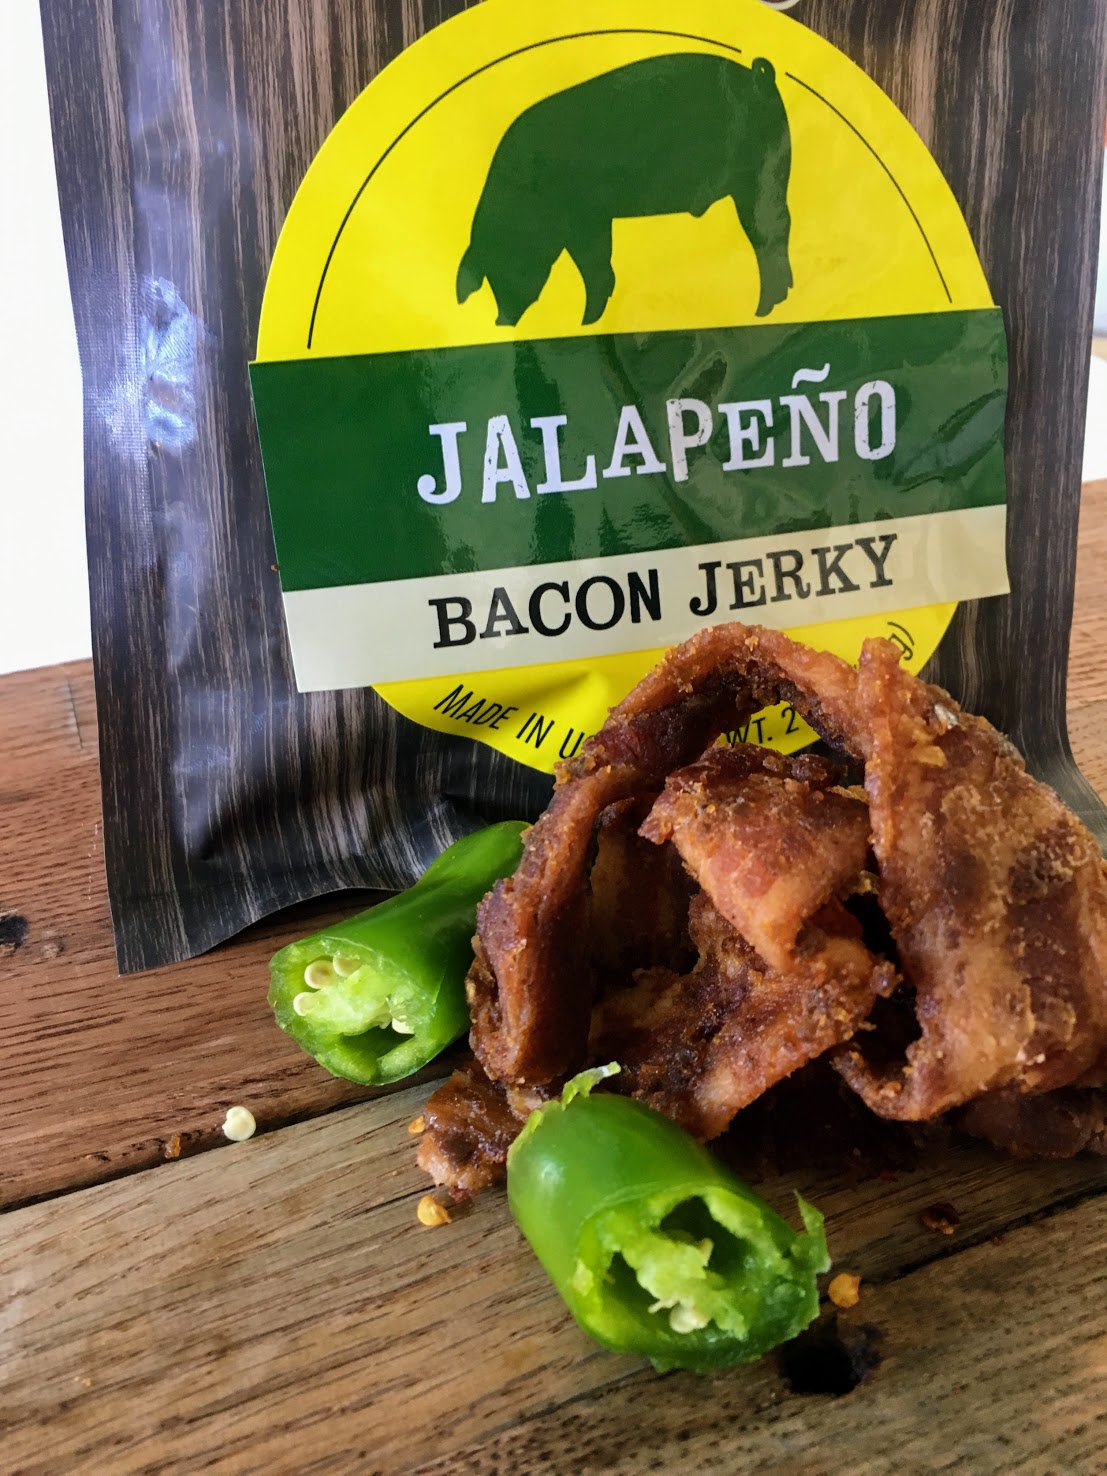 Bacon Jerky - Jalapeno by Jerky.com